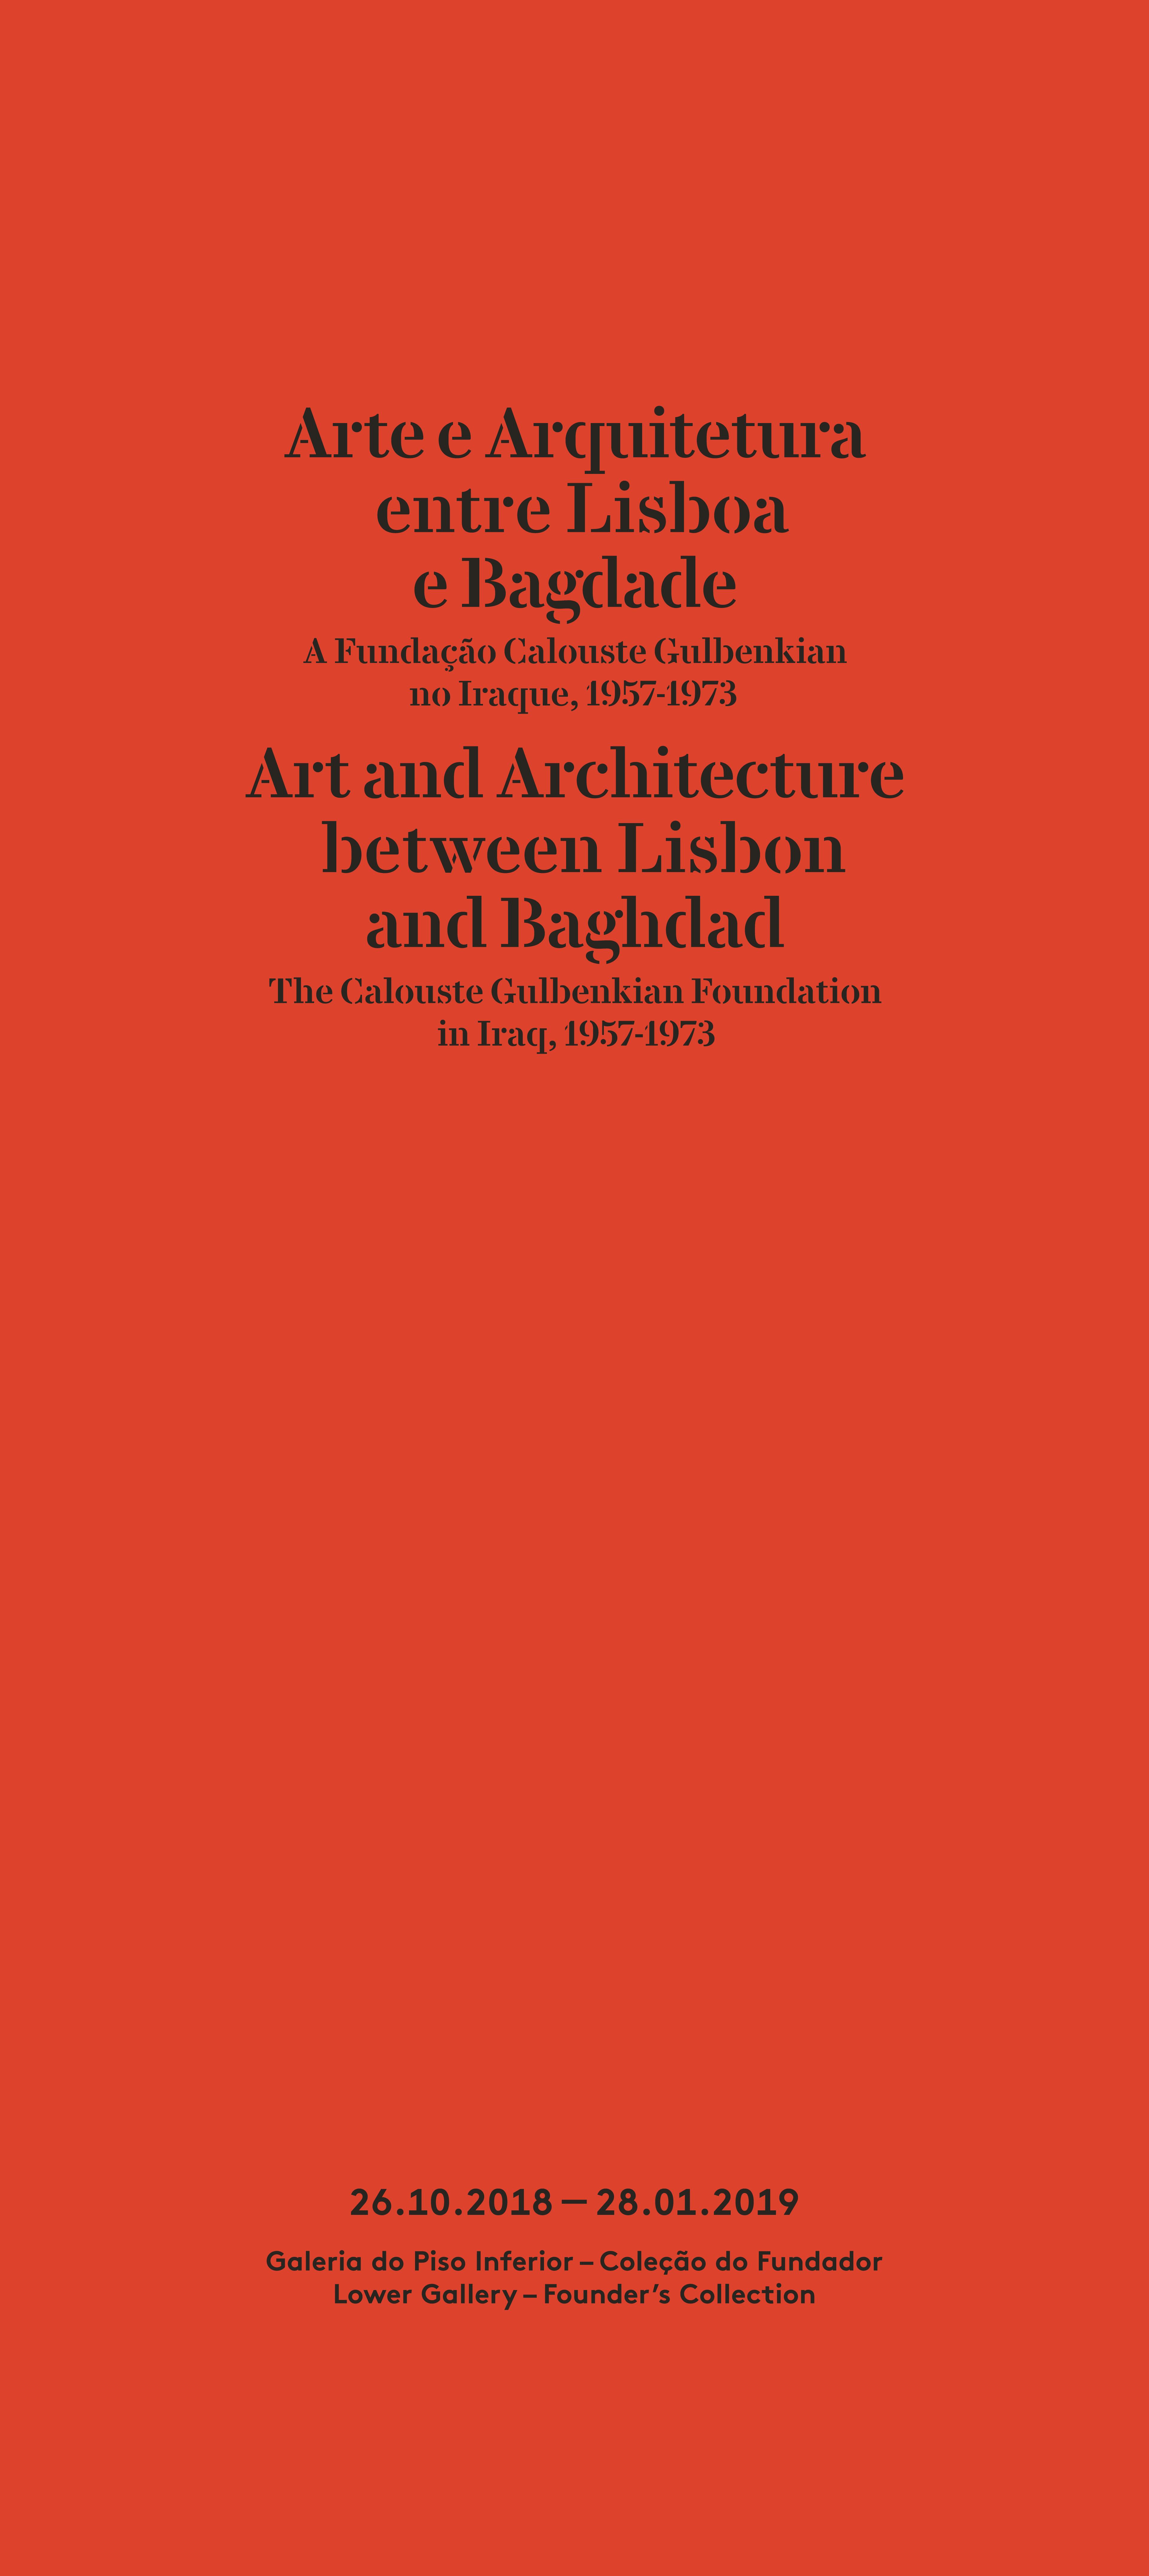 Arte e Arquitetura entre Lisboa e Bagdade / Art and Architecture between Lisbon and Baghdad